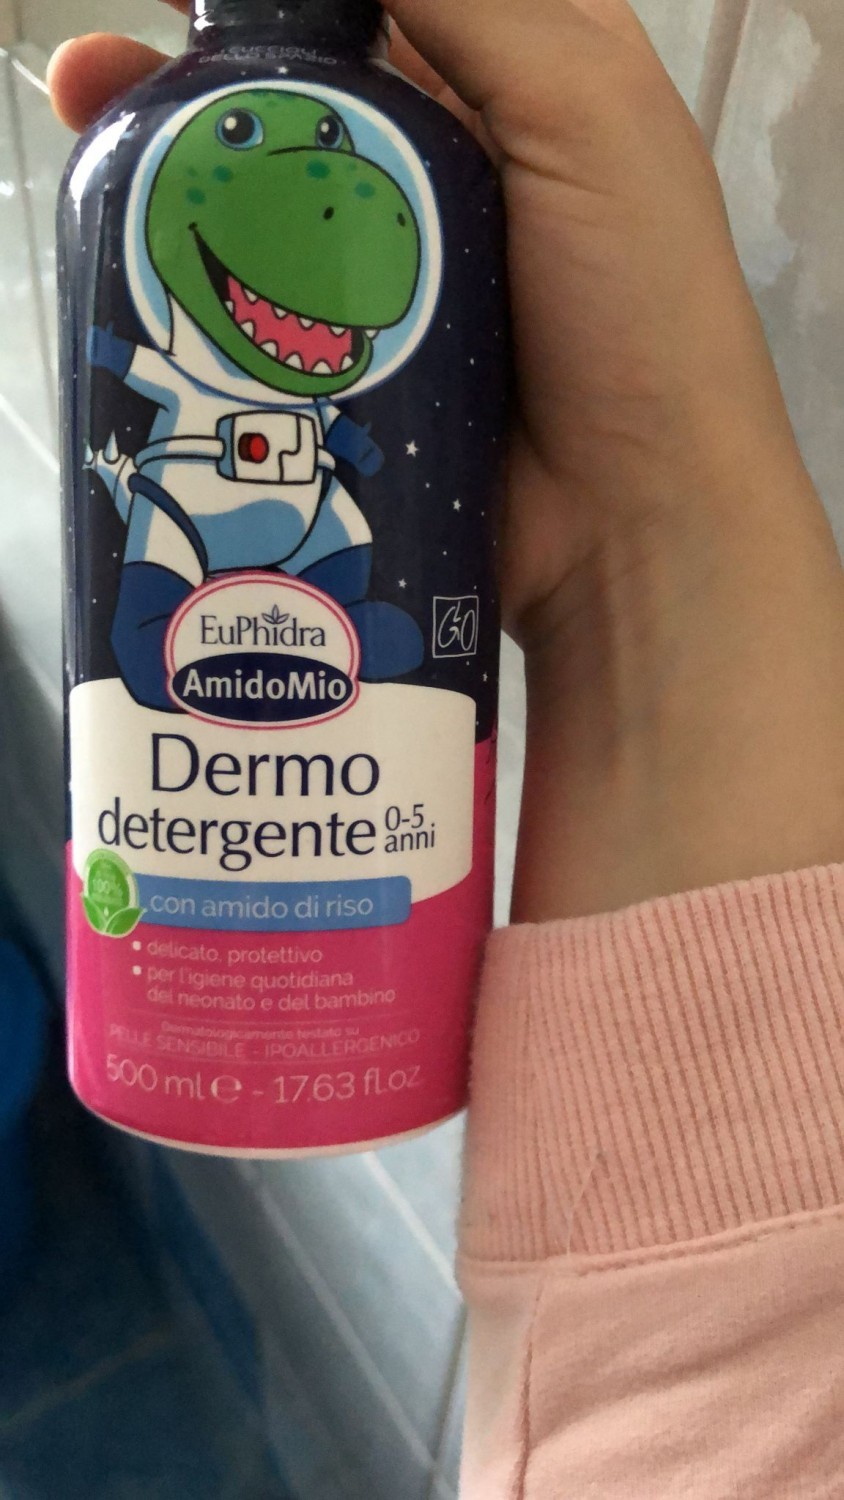 Dermo detergente